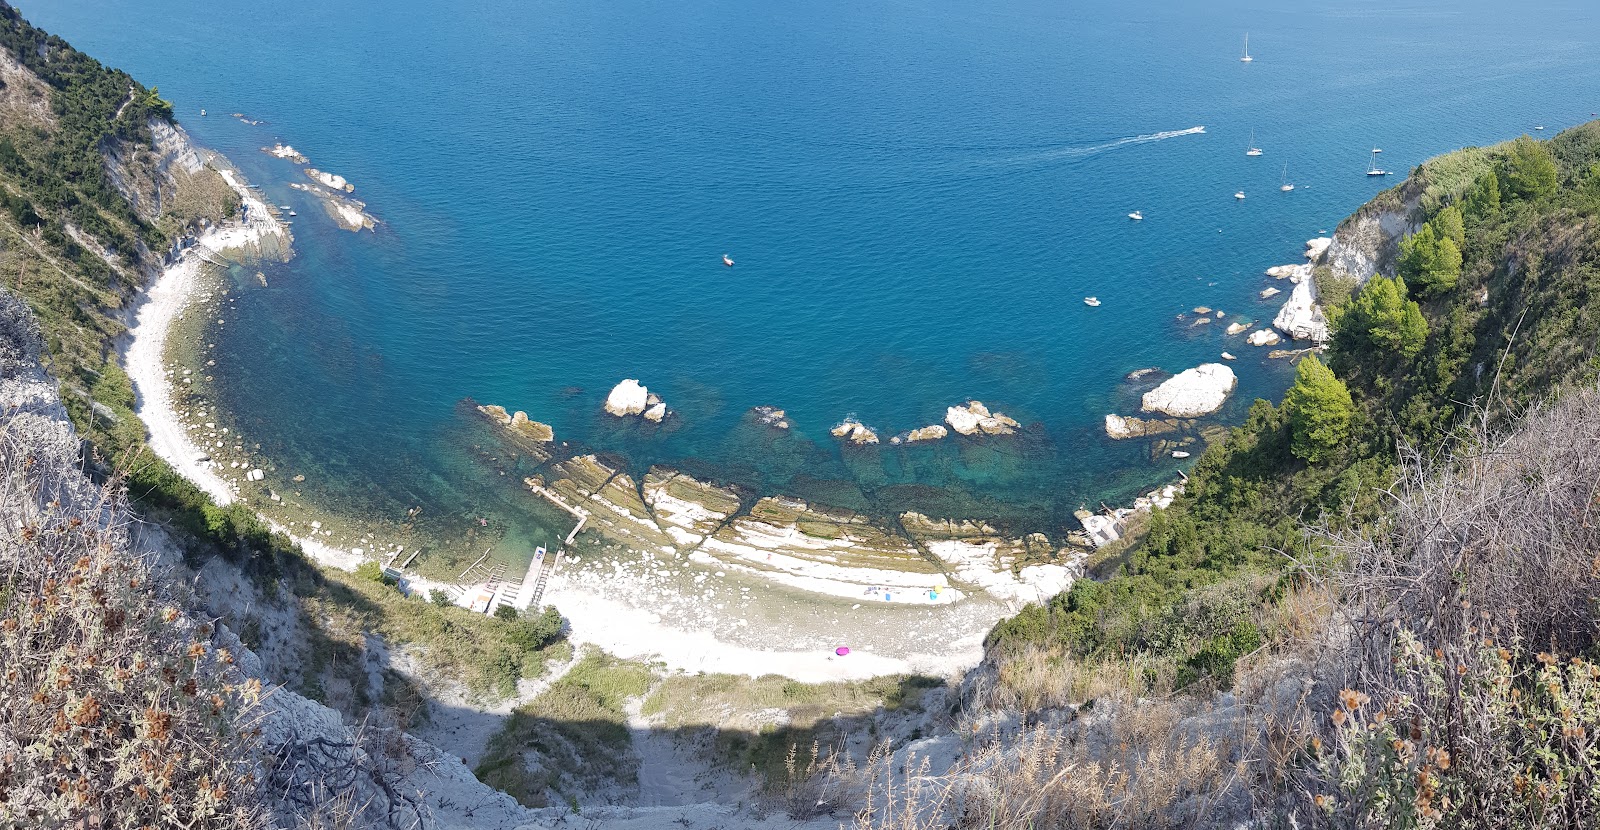 Photo of Spiaggia della Scalaccia with straight shore